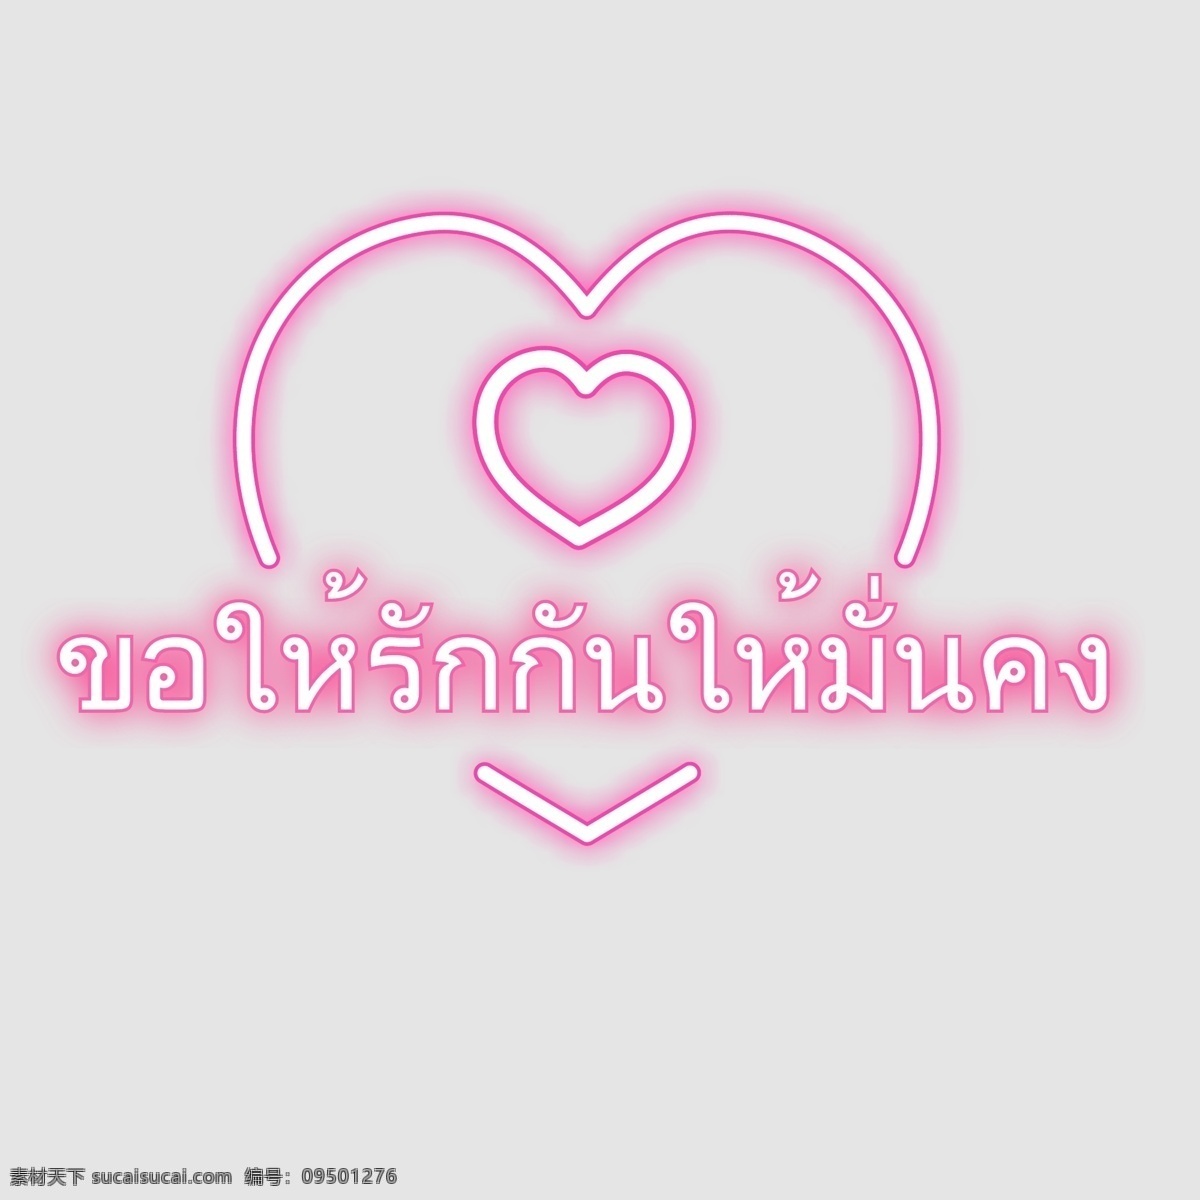 泰国 文字 字体 要求 稳定 爱 粉红 心